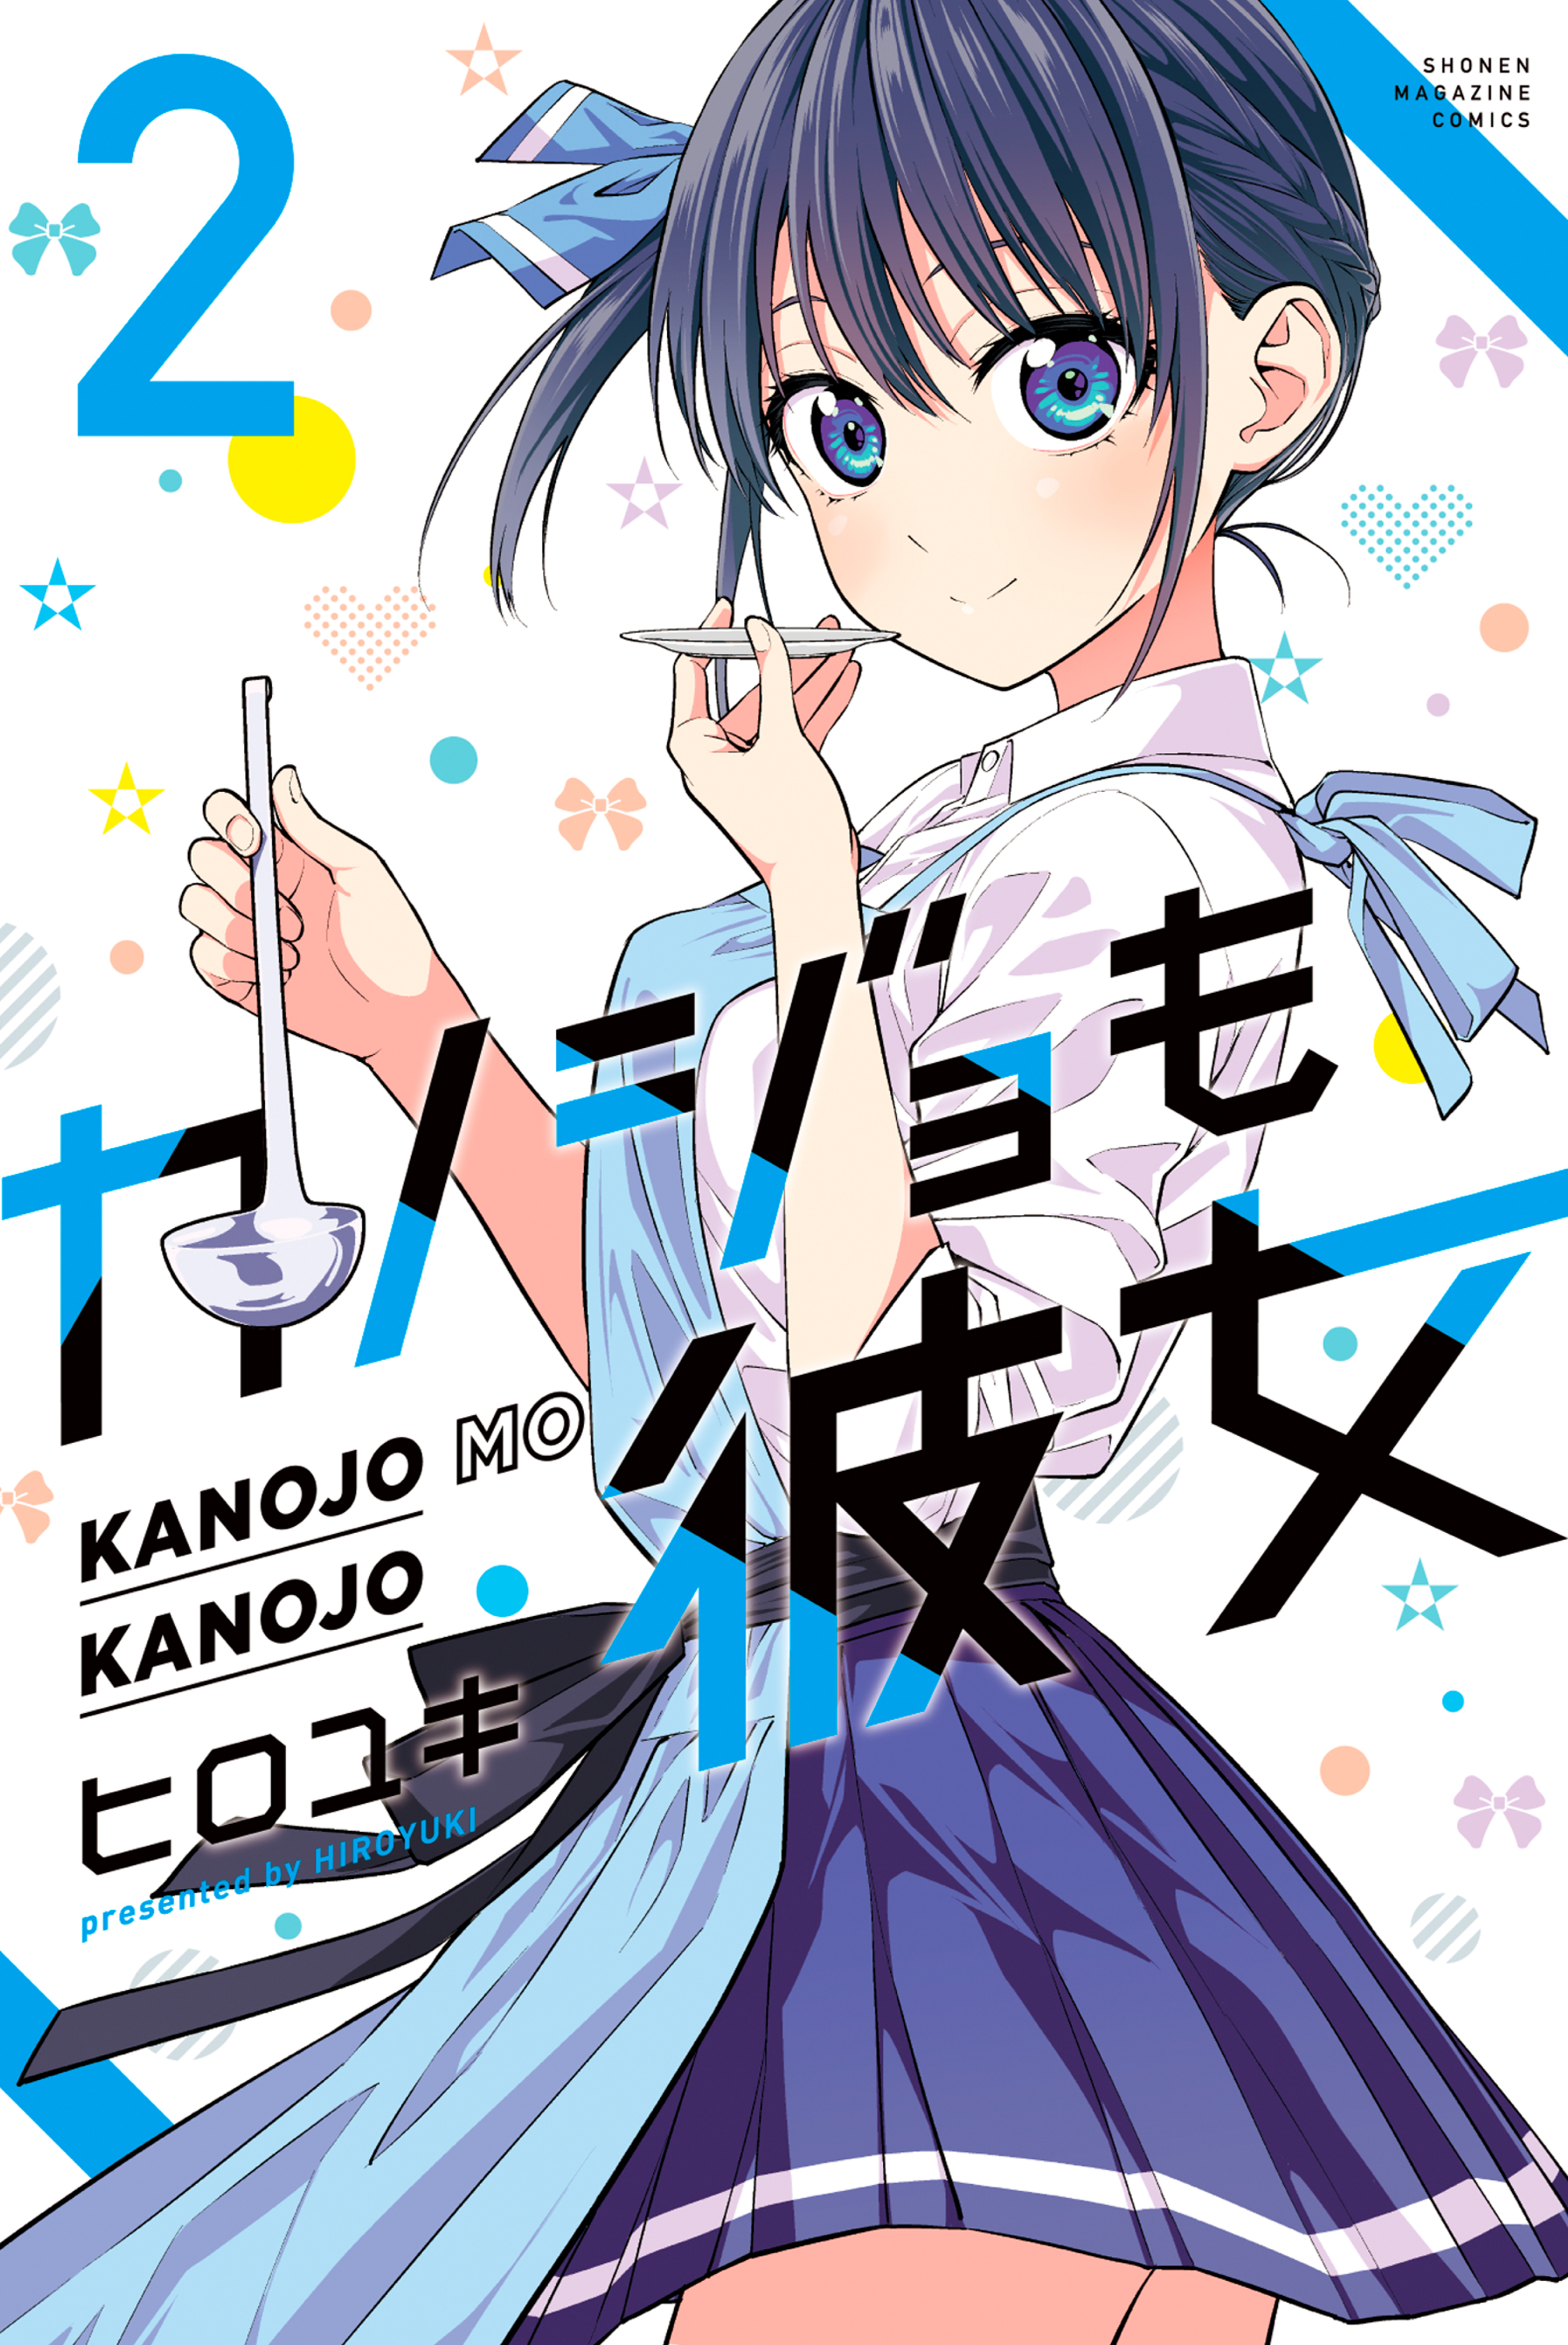 カノジョも彼女7巻|ヒロユキ|人気漫画を無料で試し読み・全巻お得に